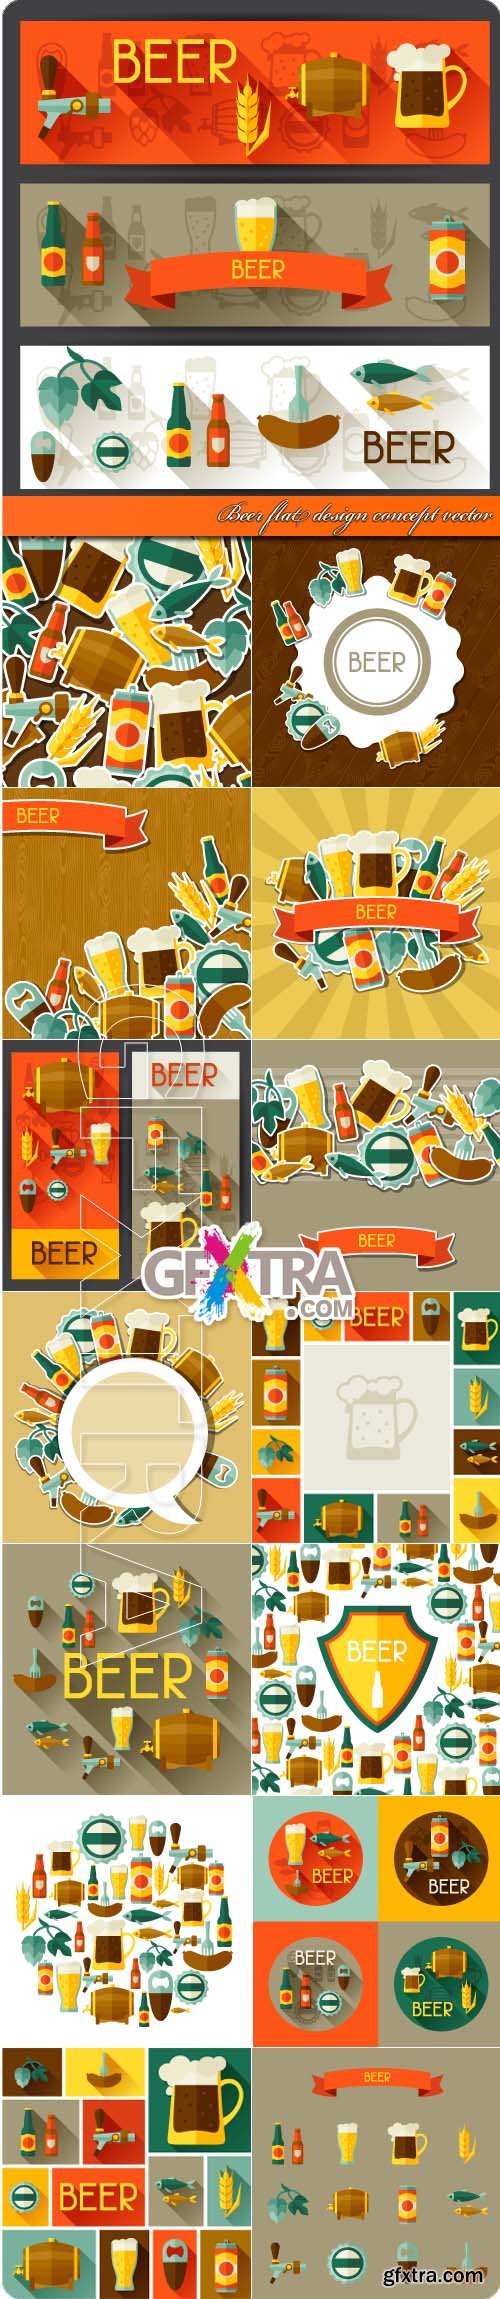 Beer flat design concept vector